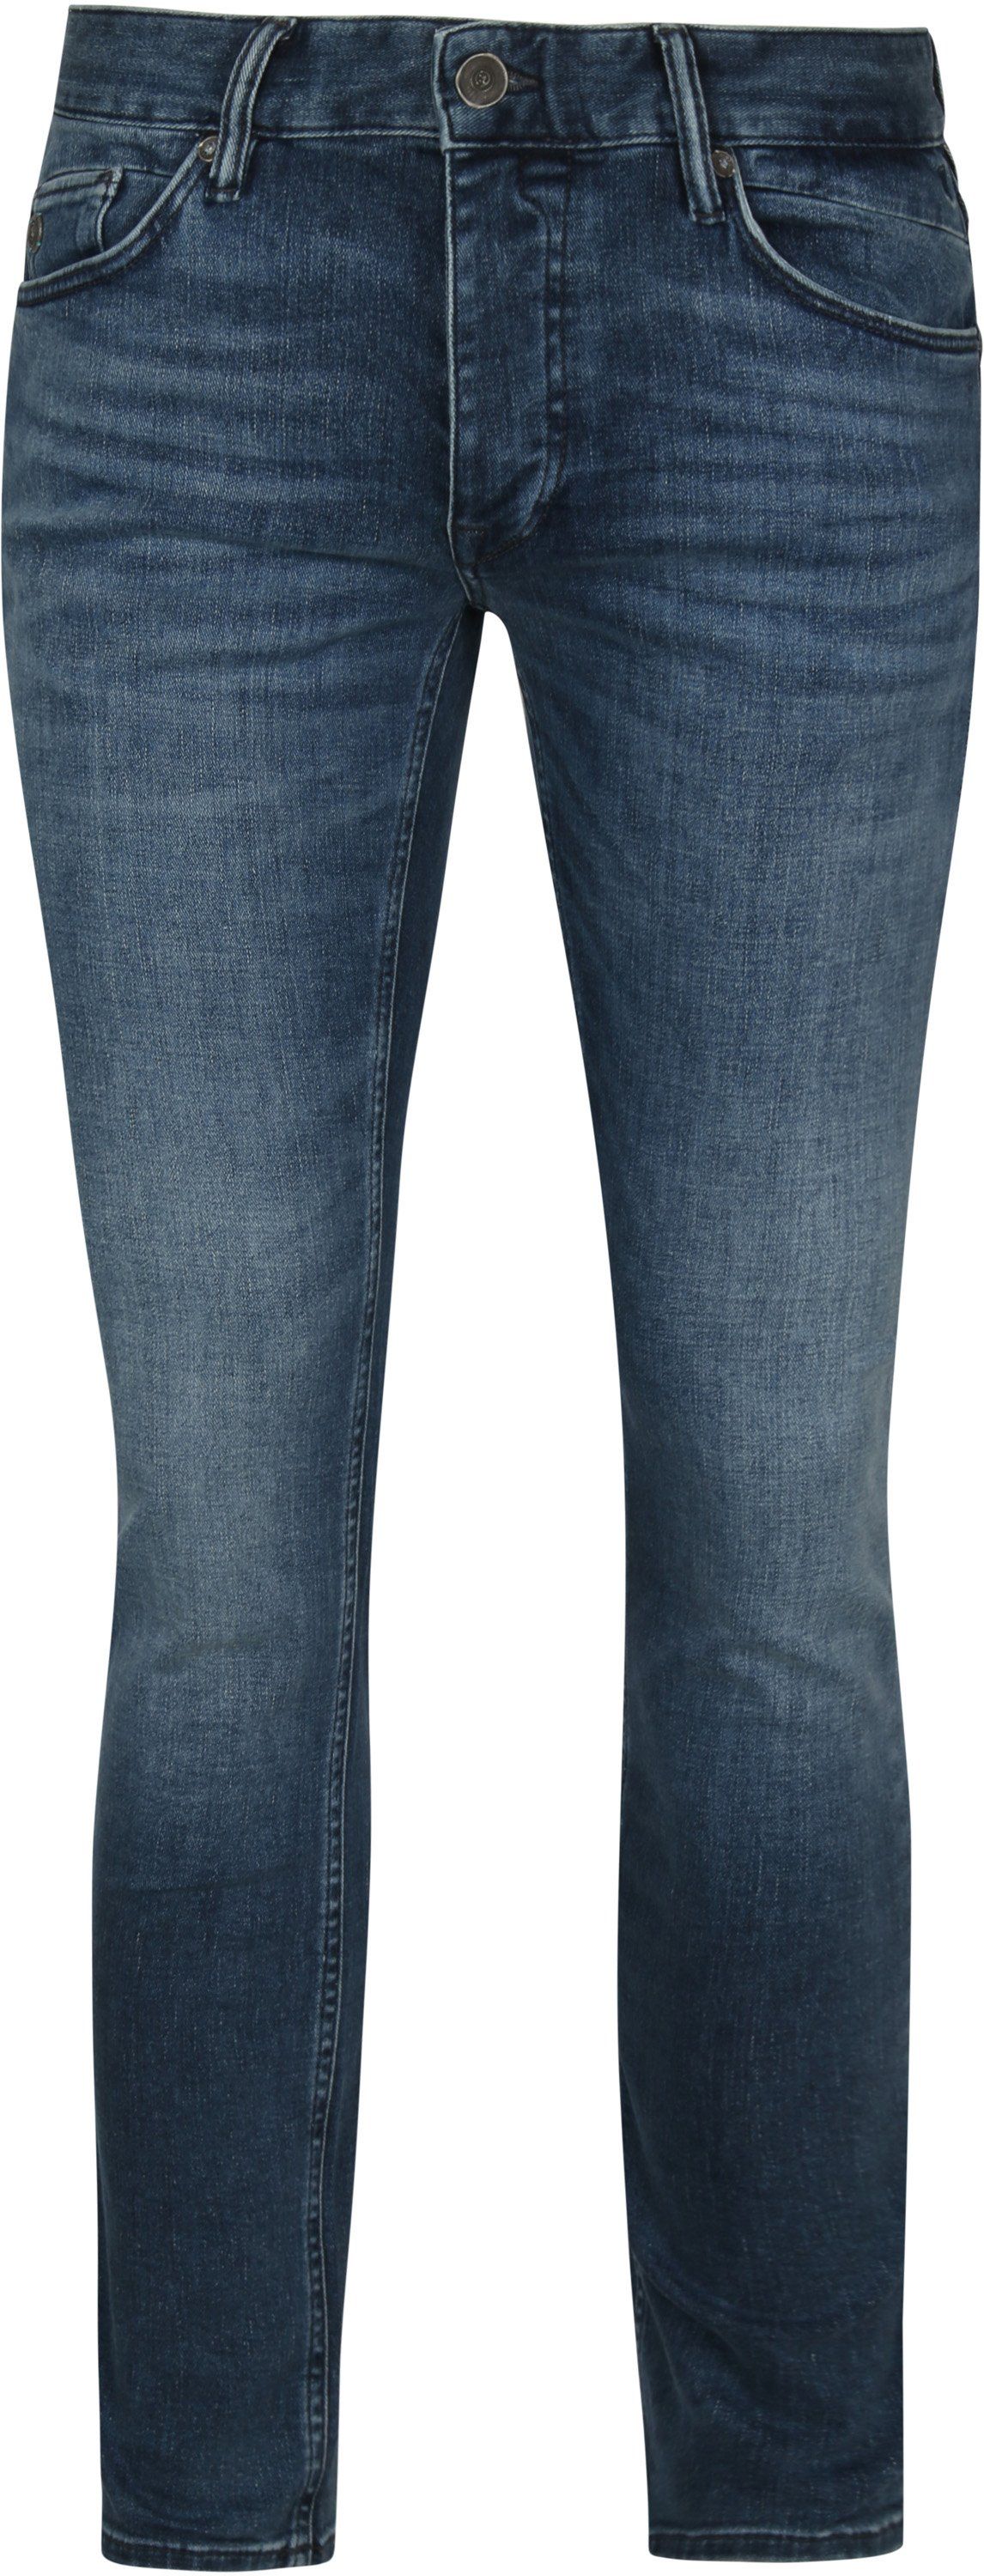 Cast Iron Riser Jeans ATB Blue size W 30